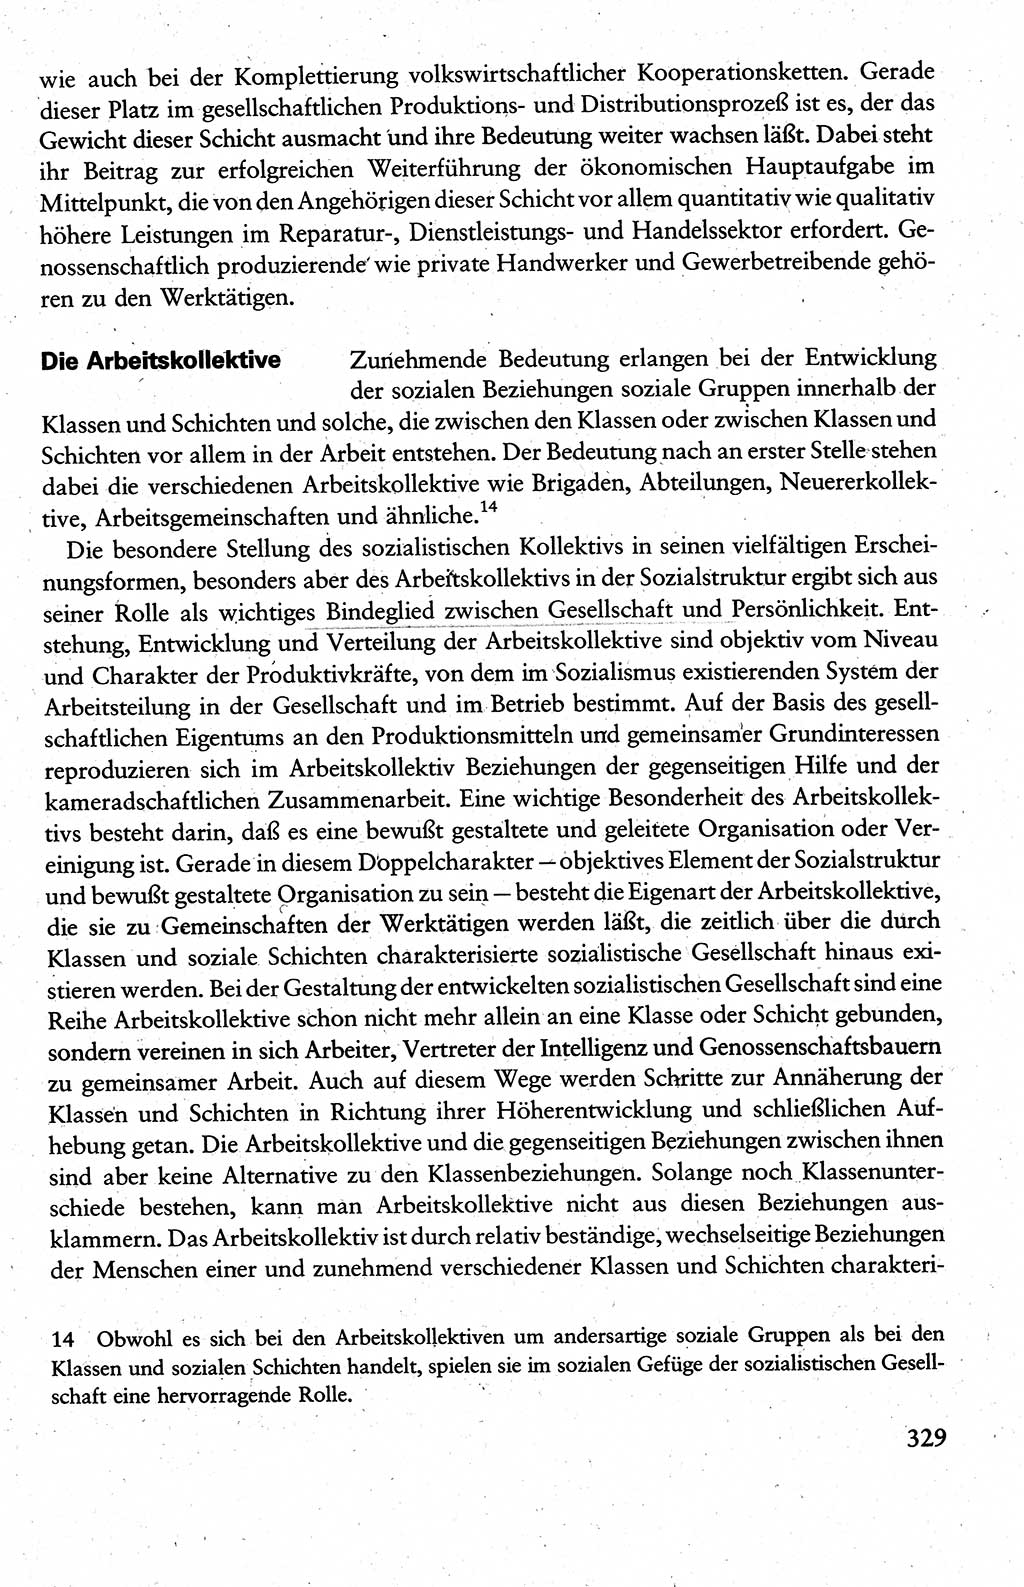 Wissenschaftlicher Kommunismus [Deutsche Demokratische Republik (DDR)], Lehrbuch für das marxistisch-leninistische Grundlagenstudium 1983, Seite 329 (Wiss. Komm. DDR Lb. 1983, S. 329)